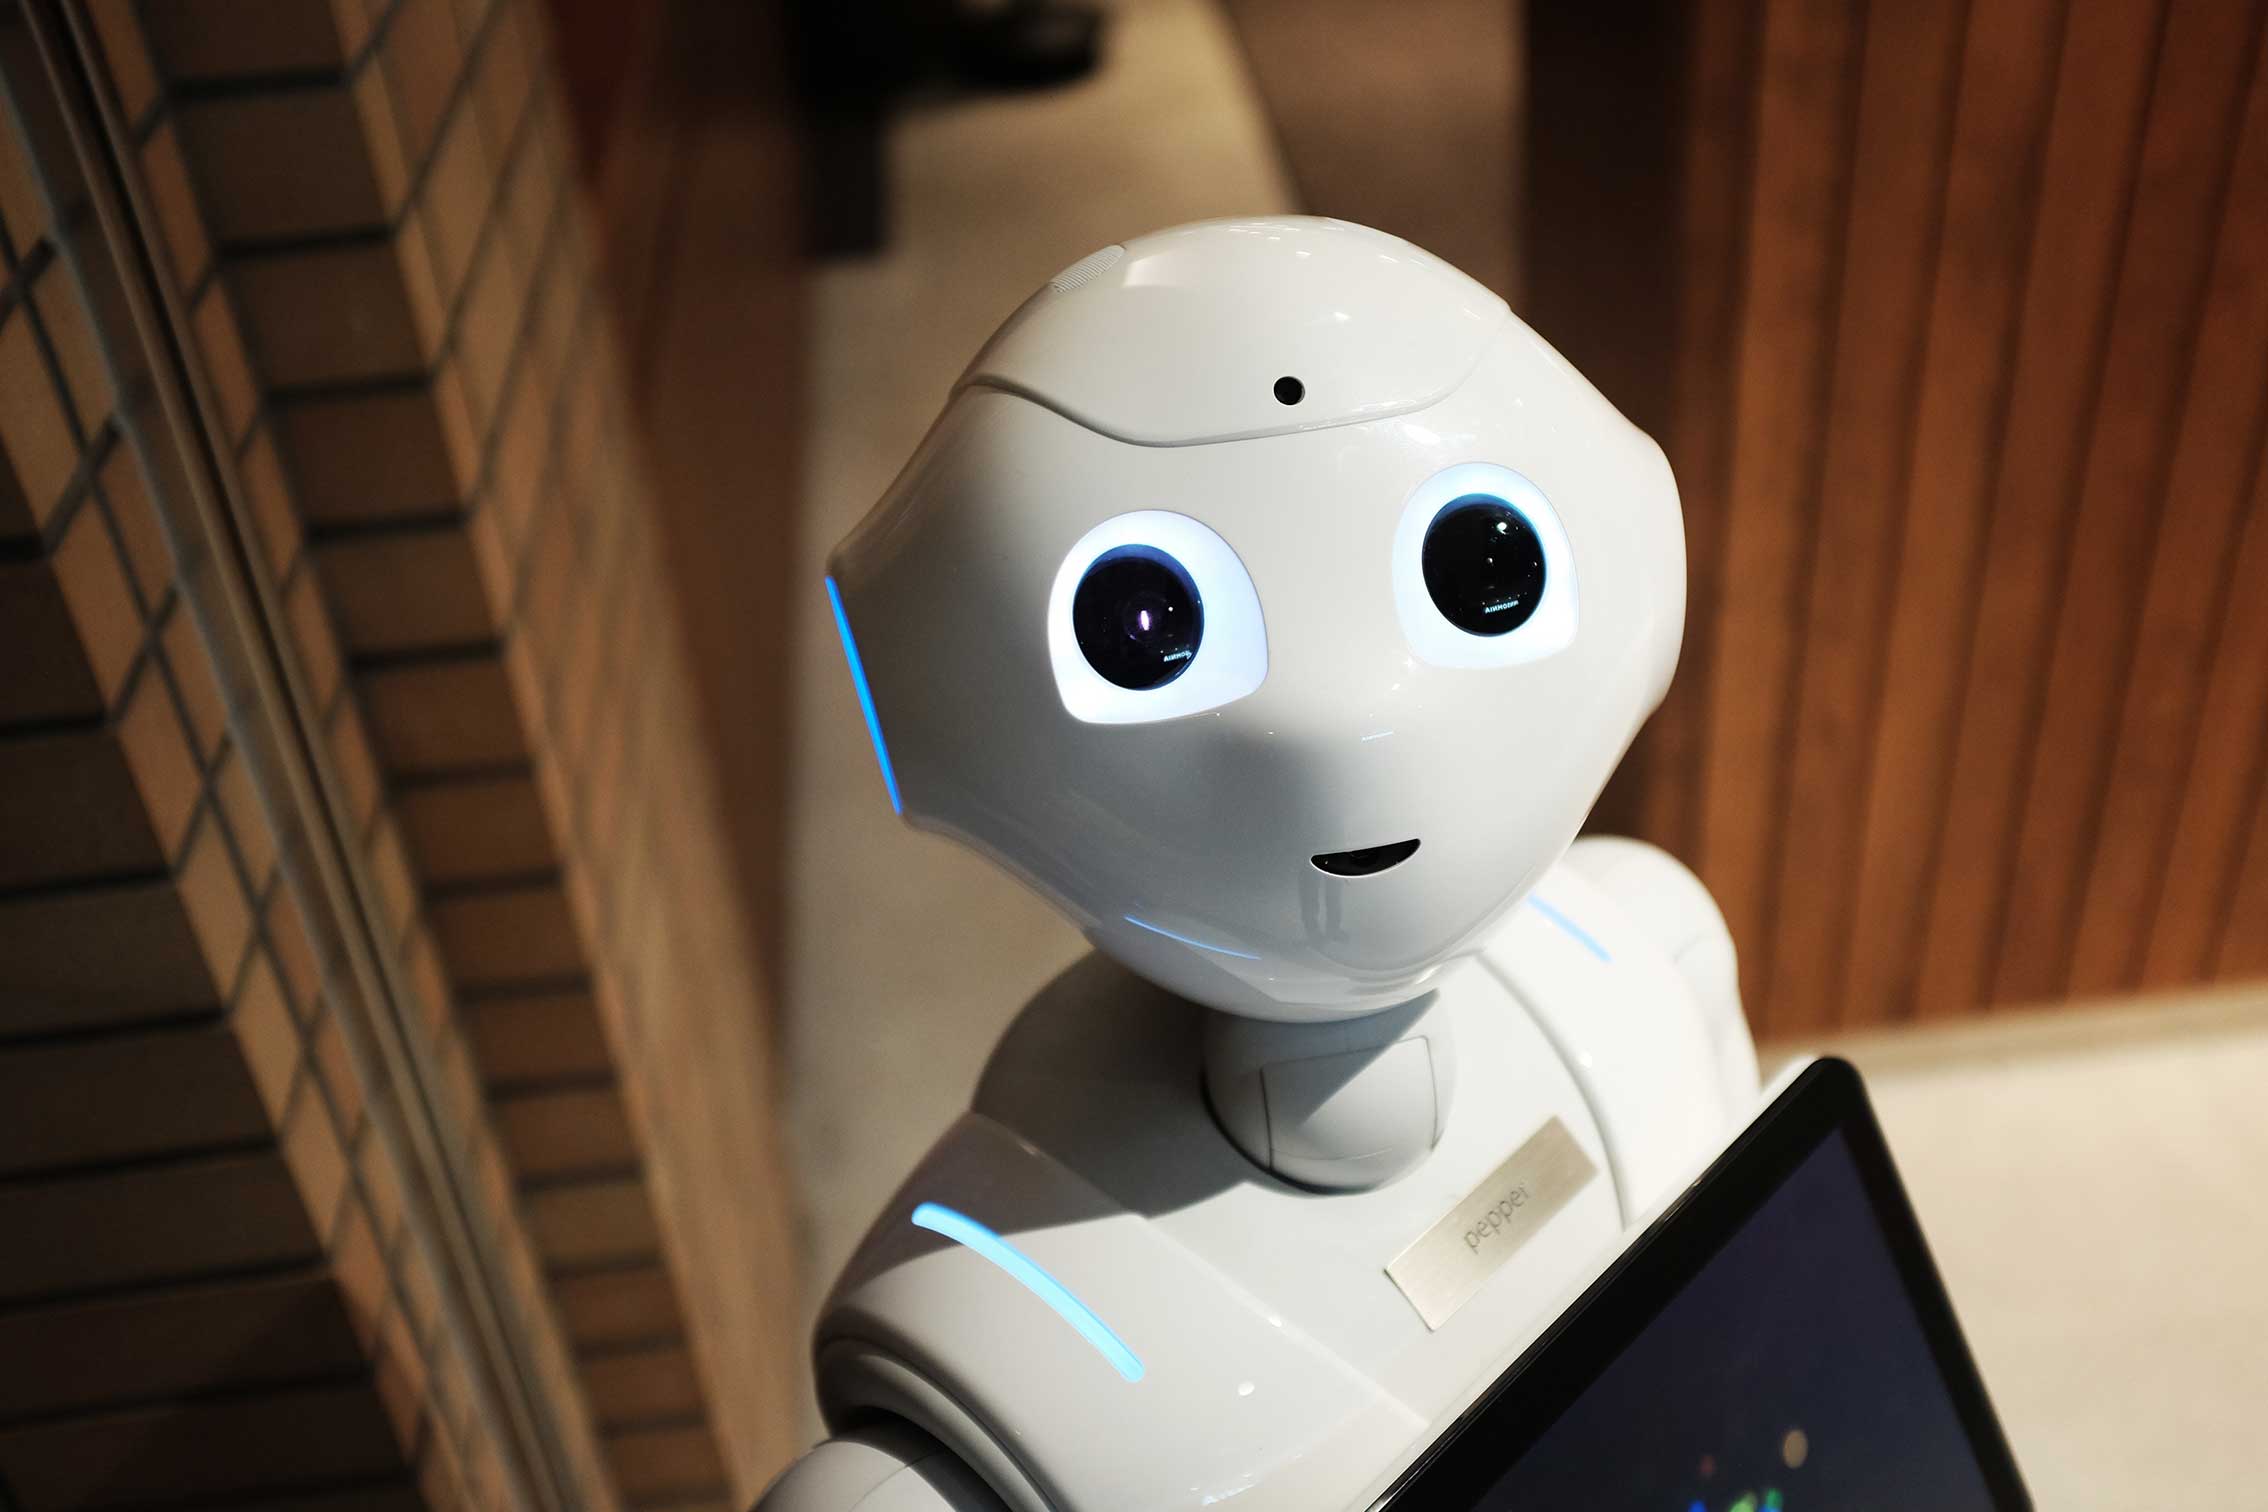 zu sehen ist ein freundlich wirkender Roboter. Thema ist die neue Sprach-KI ChatGPT. Bild: Pexels/Alex Knight